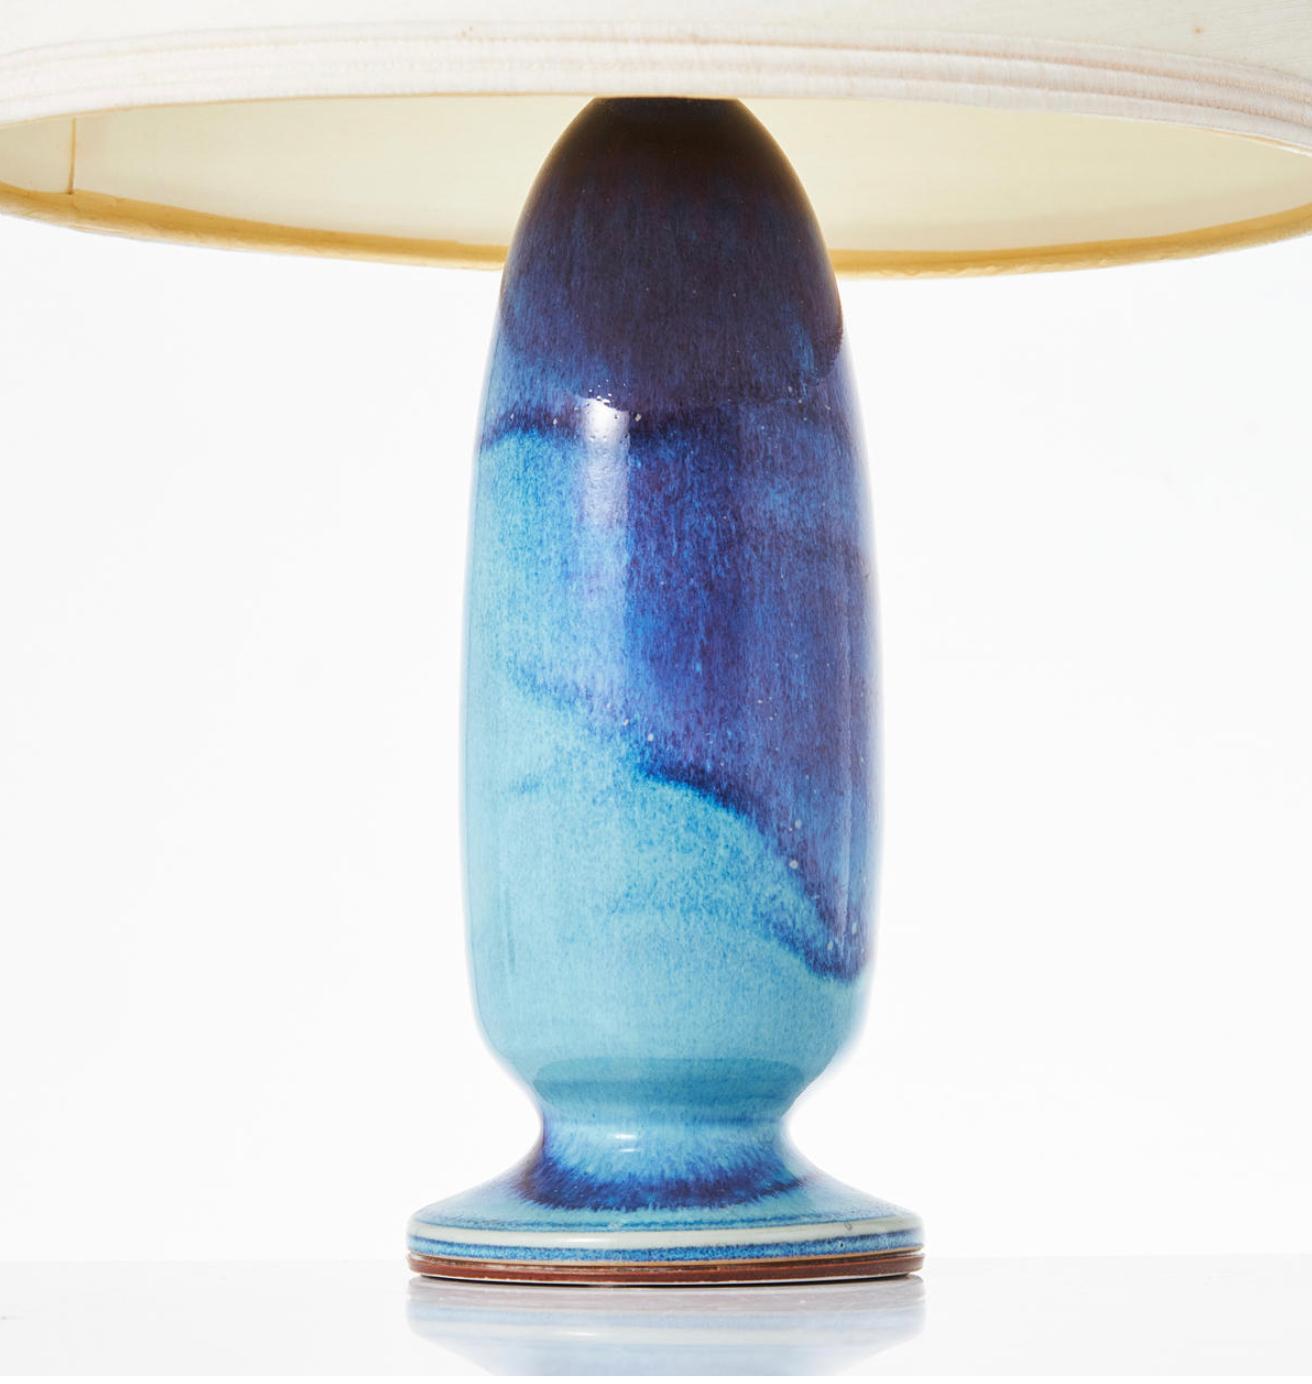 Eine Tischlampe aus Steinzeug von Berndt Friberg.
Aniaga glasiert in türkis/blauen Farbtönen, signiert mit der Hand des Studios Friberg, datiert 1974. Gesamthöhe 19